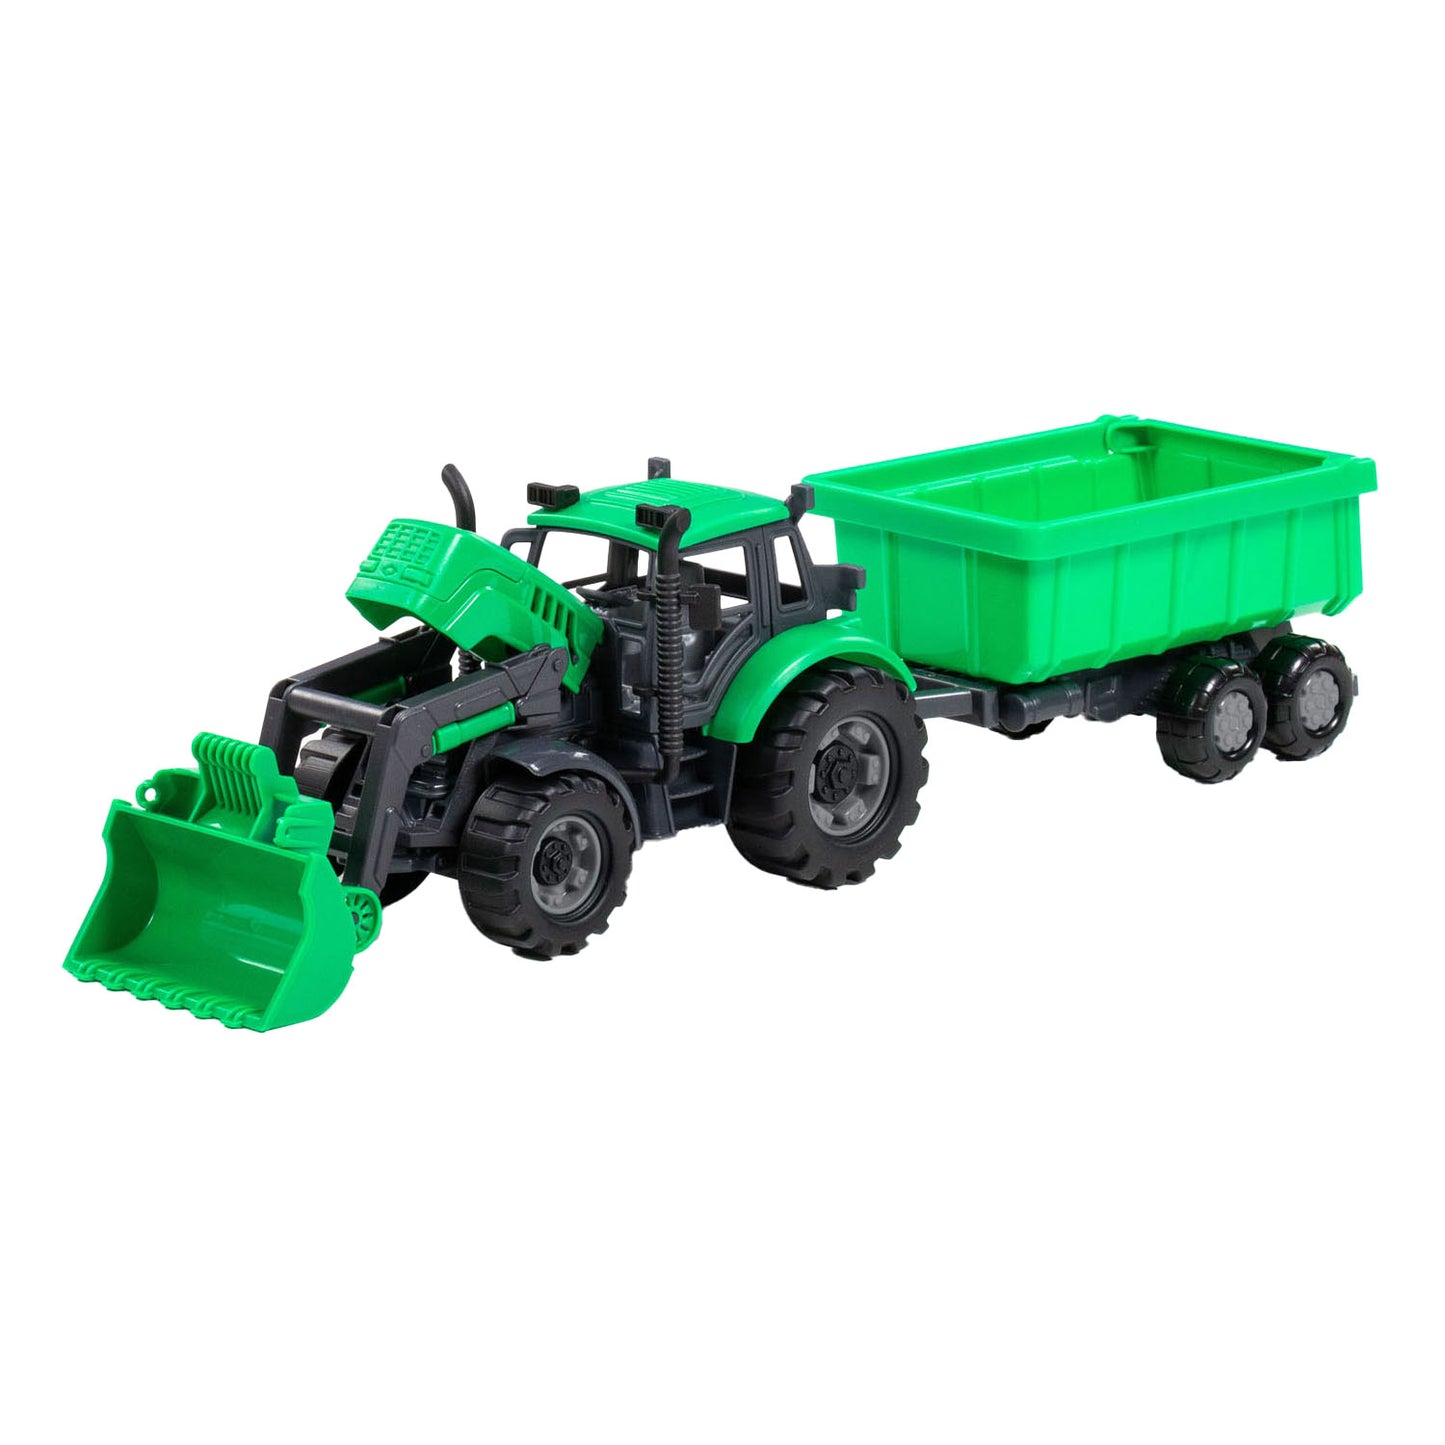 Cavallino Toys Tractor Cavallino con cargador y tortura de suministro verde, Escala 1:32